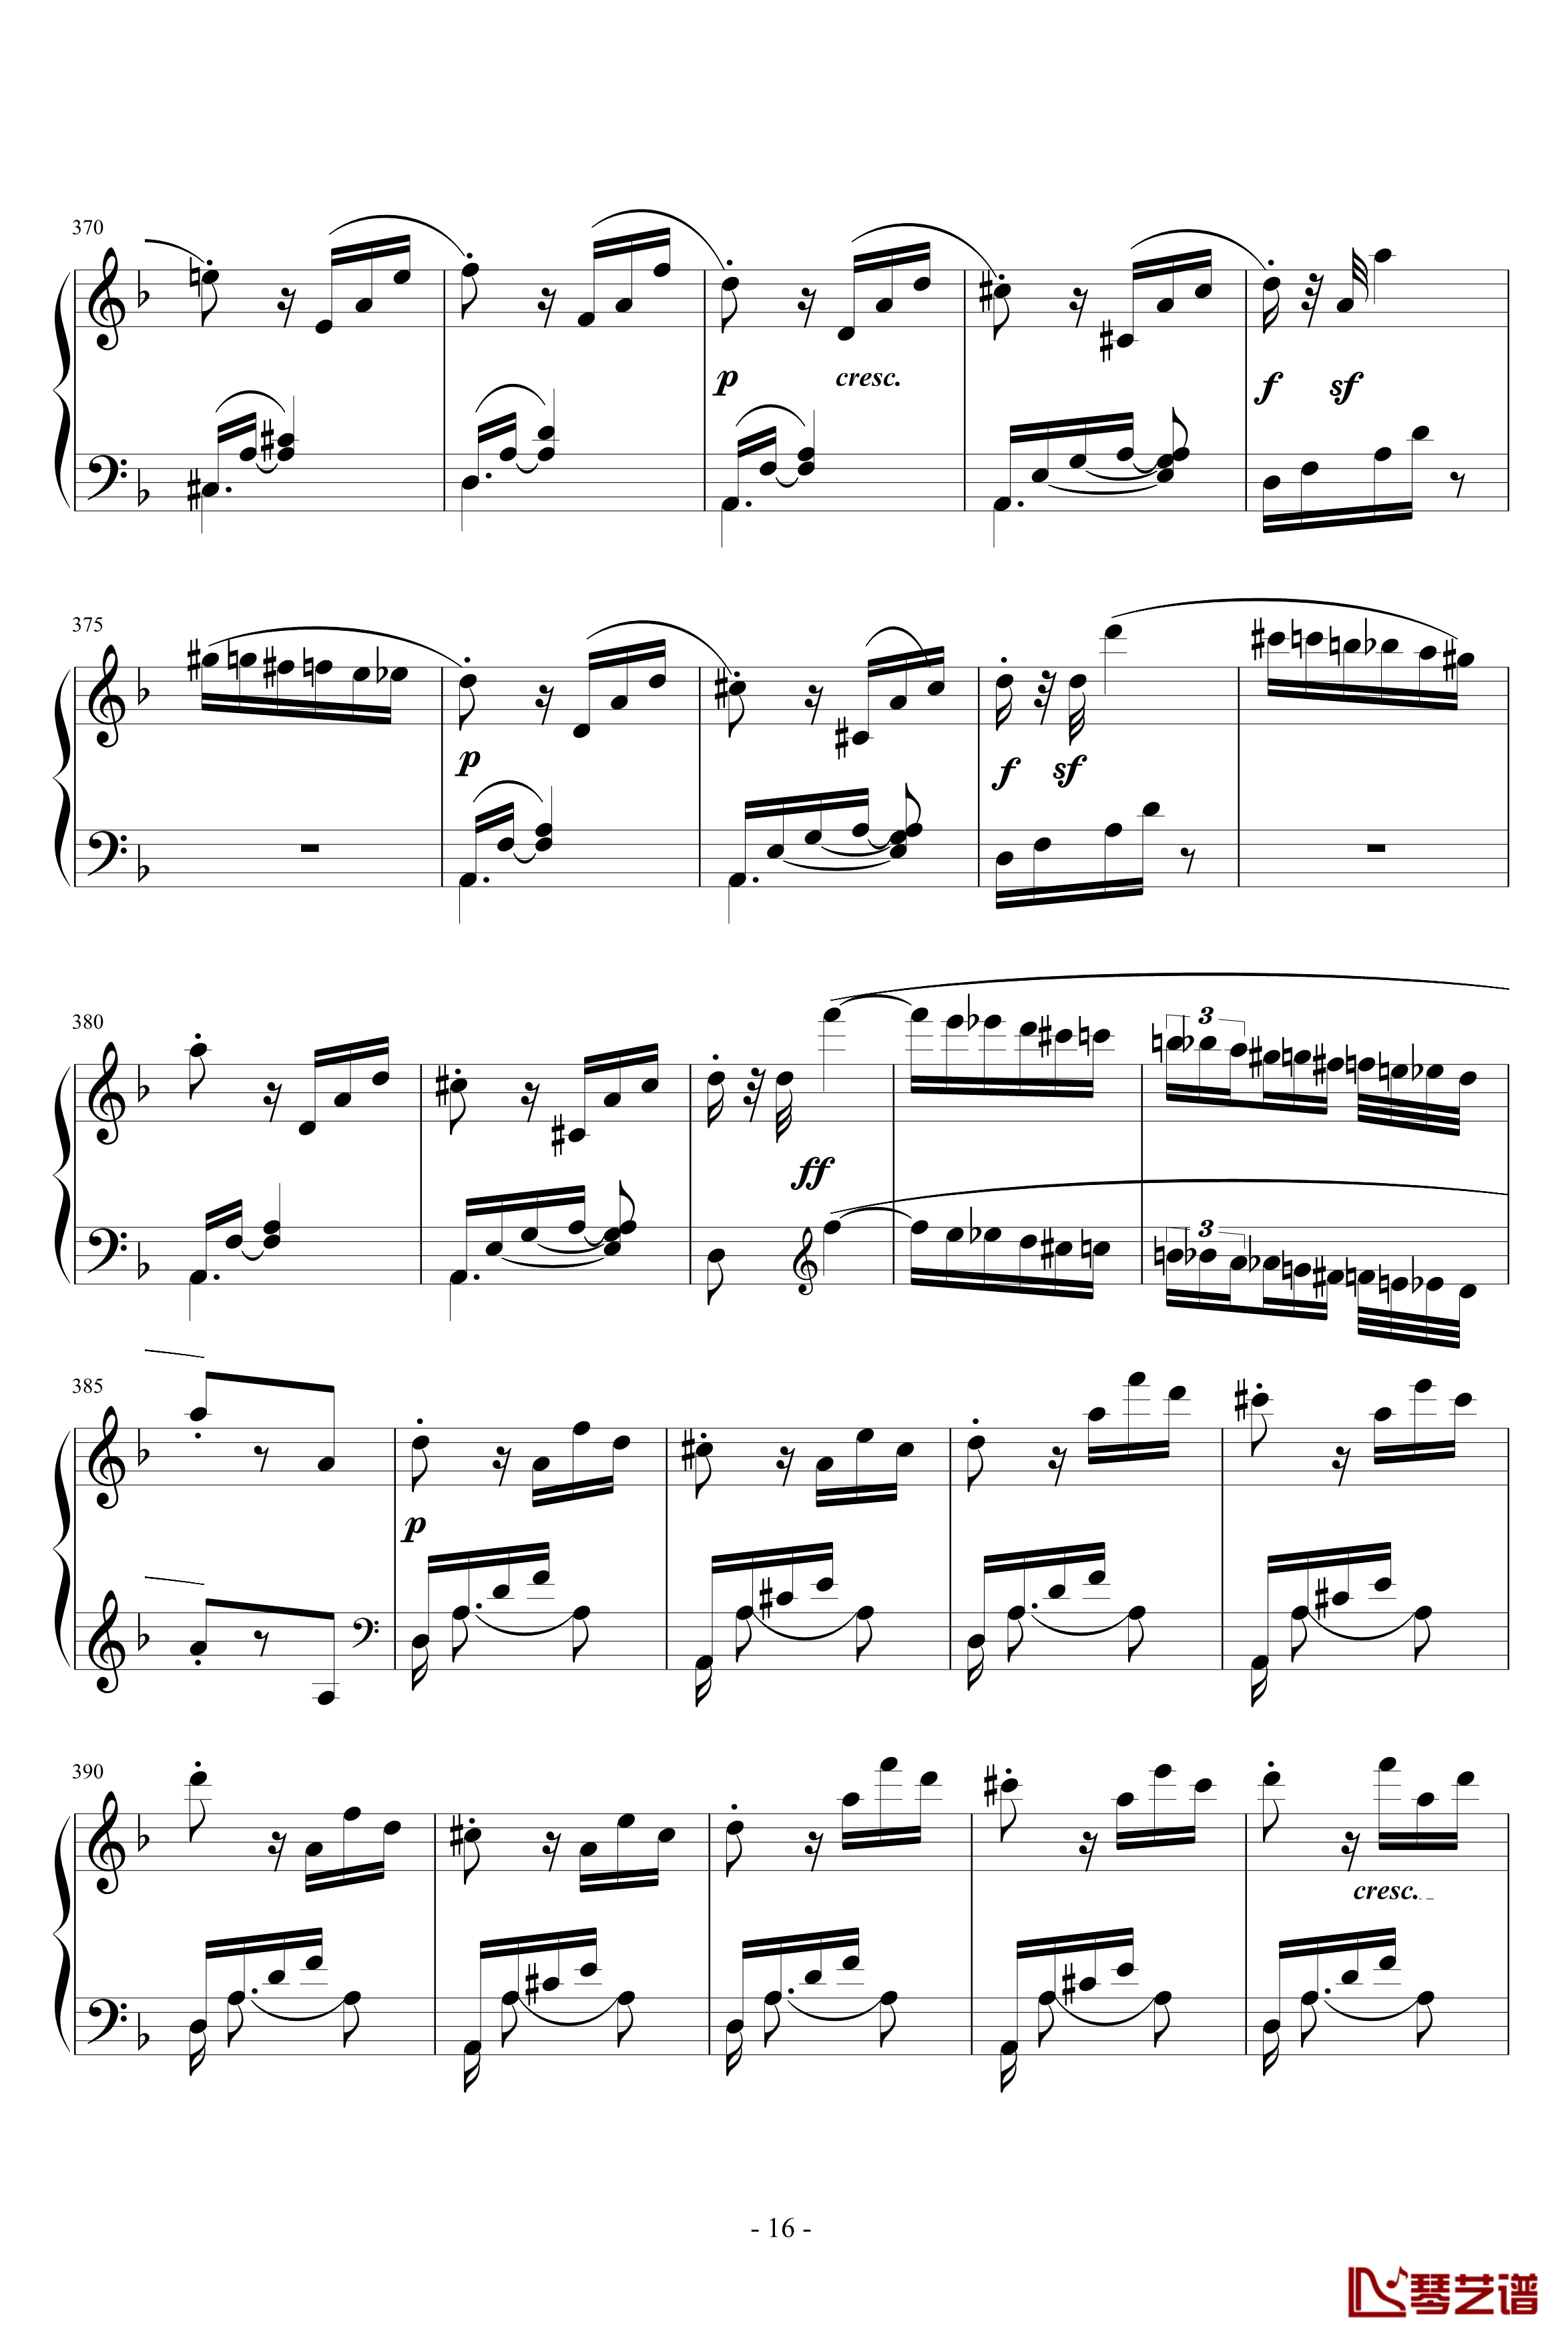 暴风雨奏鸣曲第三乐章-贝多芬-beethoven16